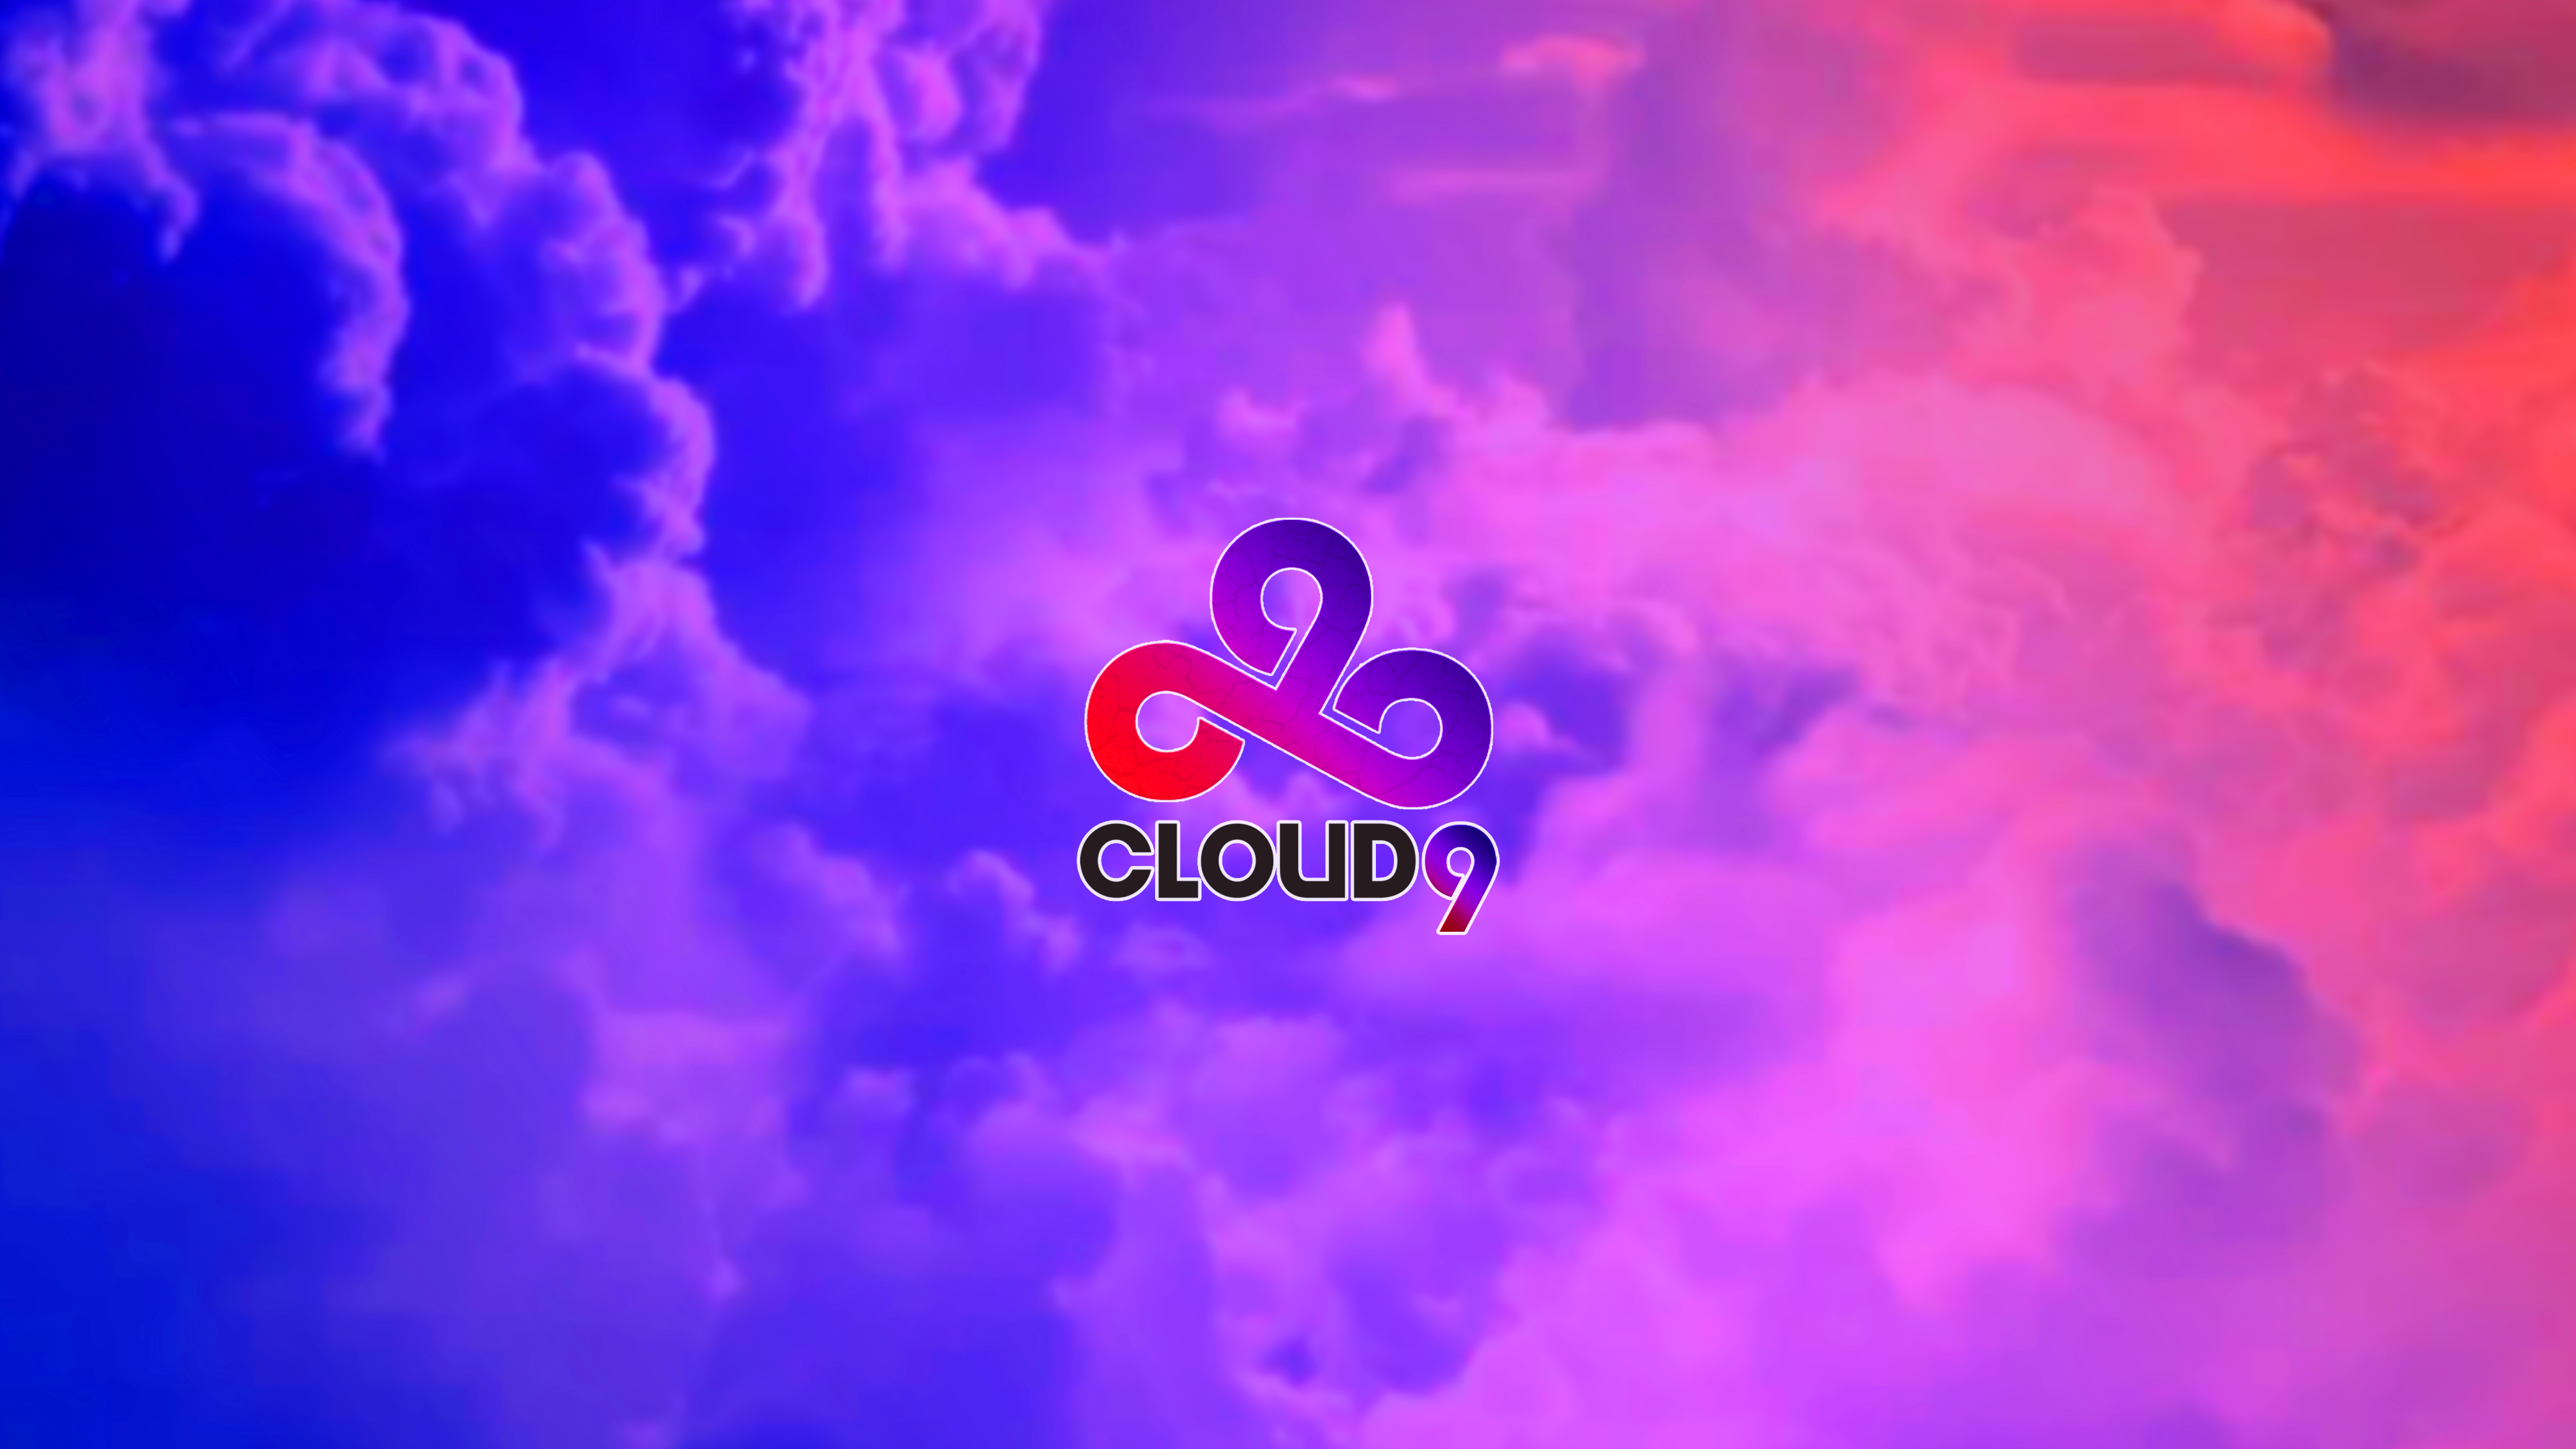 Cloud cs 2. Cloud9 обои. Cloud9 обои для рабочего стола. Cloud9 КС го. Клоуд 9.